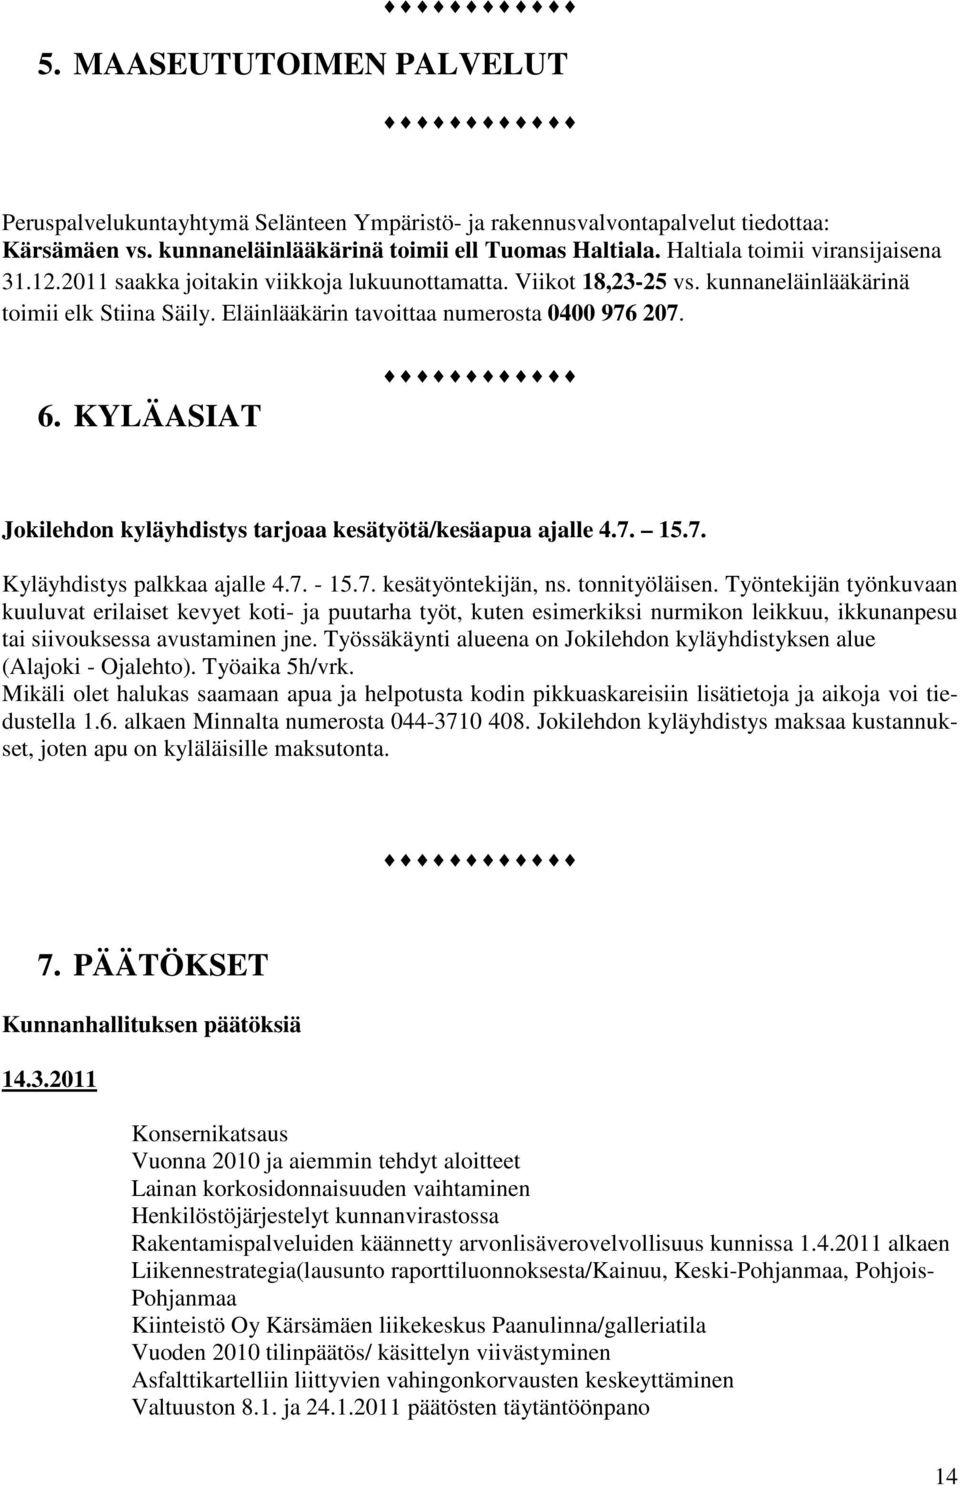 KYLÄASIAT Jokilehdon kyläyhdistys tarjoaa kesätyötä/kesäapua ajalle 4.7. 15.7. Kyläyhdistys palkkaa ajalle 4.7. - 15.7. kesätyöntekijän, ns. tonnityöläisen.